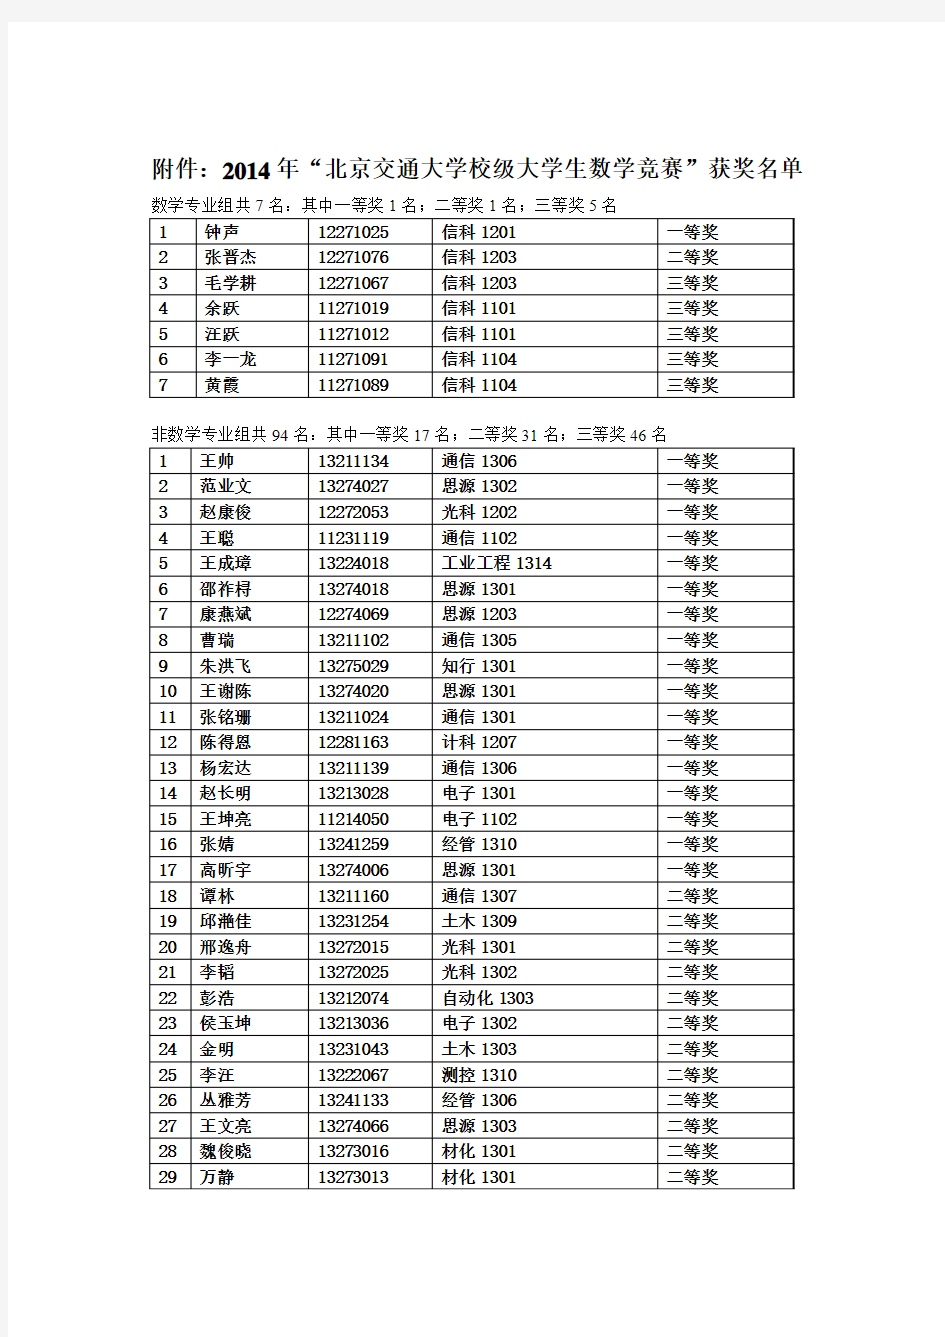 2014年北京交通大学校级大学生数学竞赛结果公布